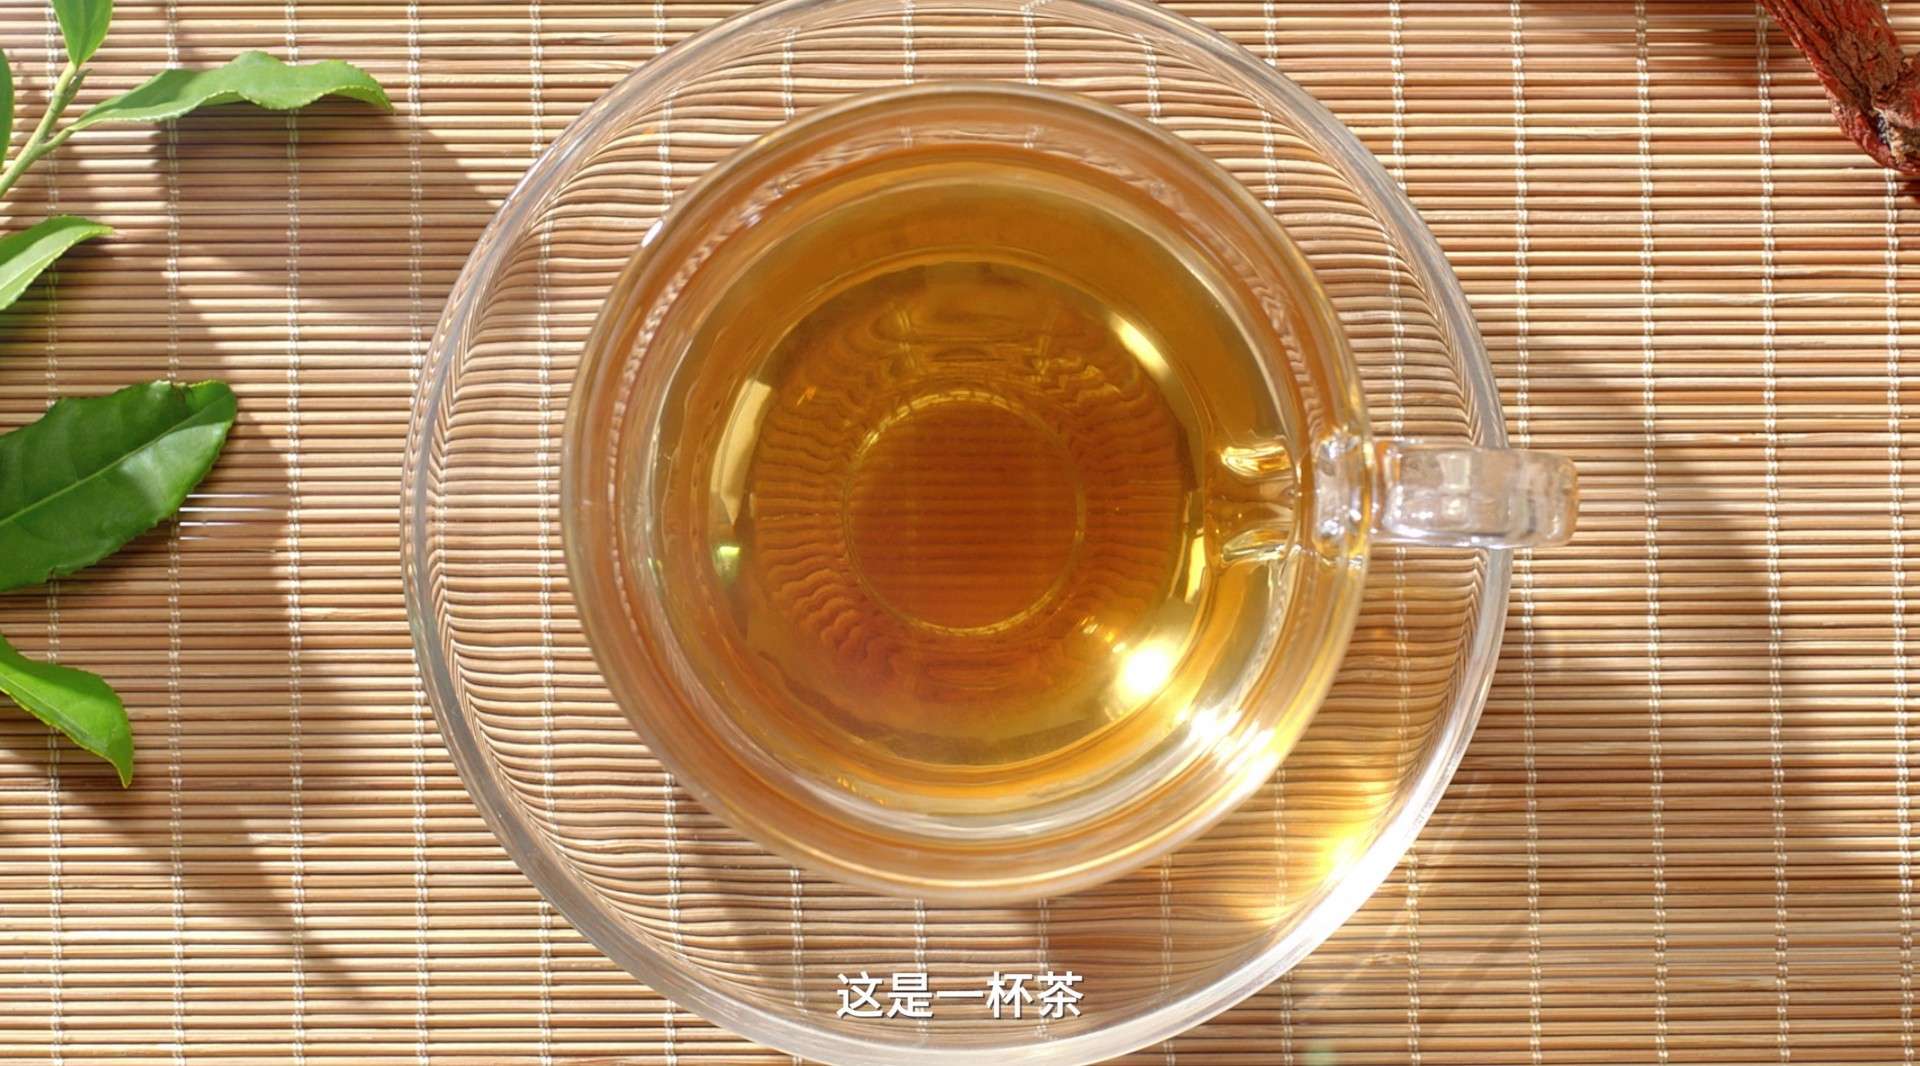 狮子座广告 天草丹参保心茶 《一杯茶》